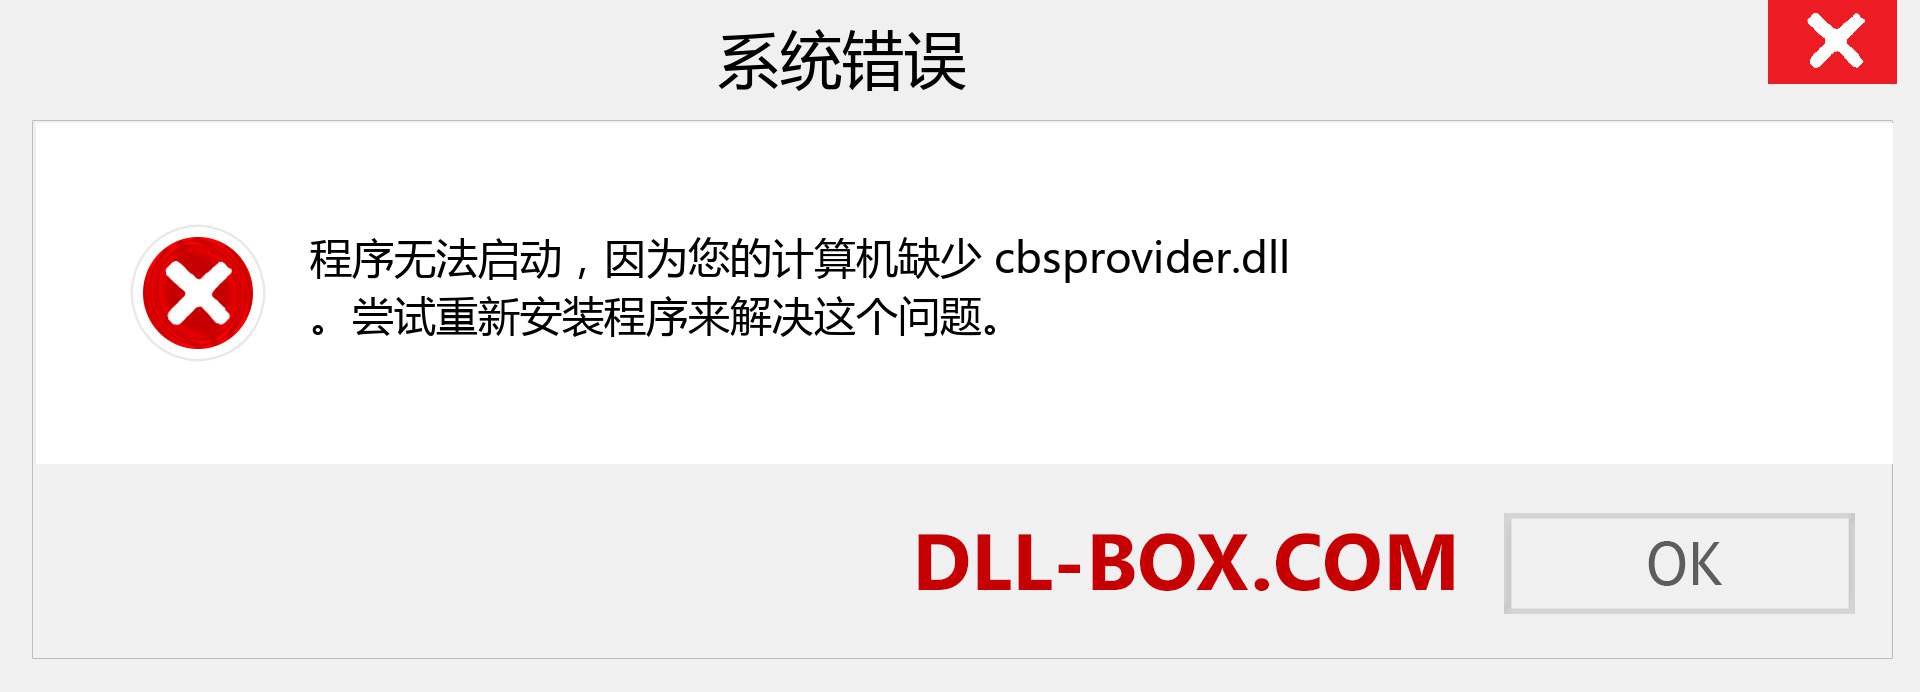 cbsprovider.dll 文件丢失？。 适用于 Windows 7、8、10 的下载 - 修复 Windows、照片、图像上的 cbsprovider dll 丢失错误